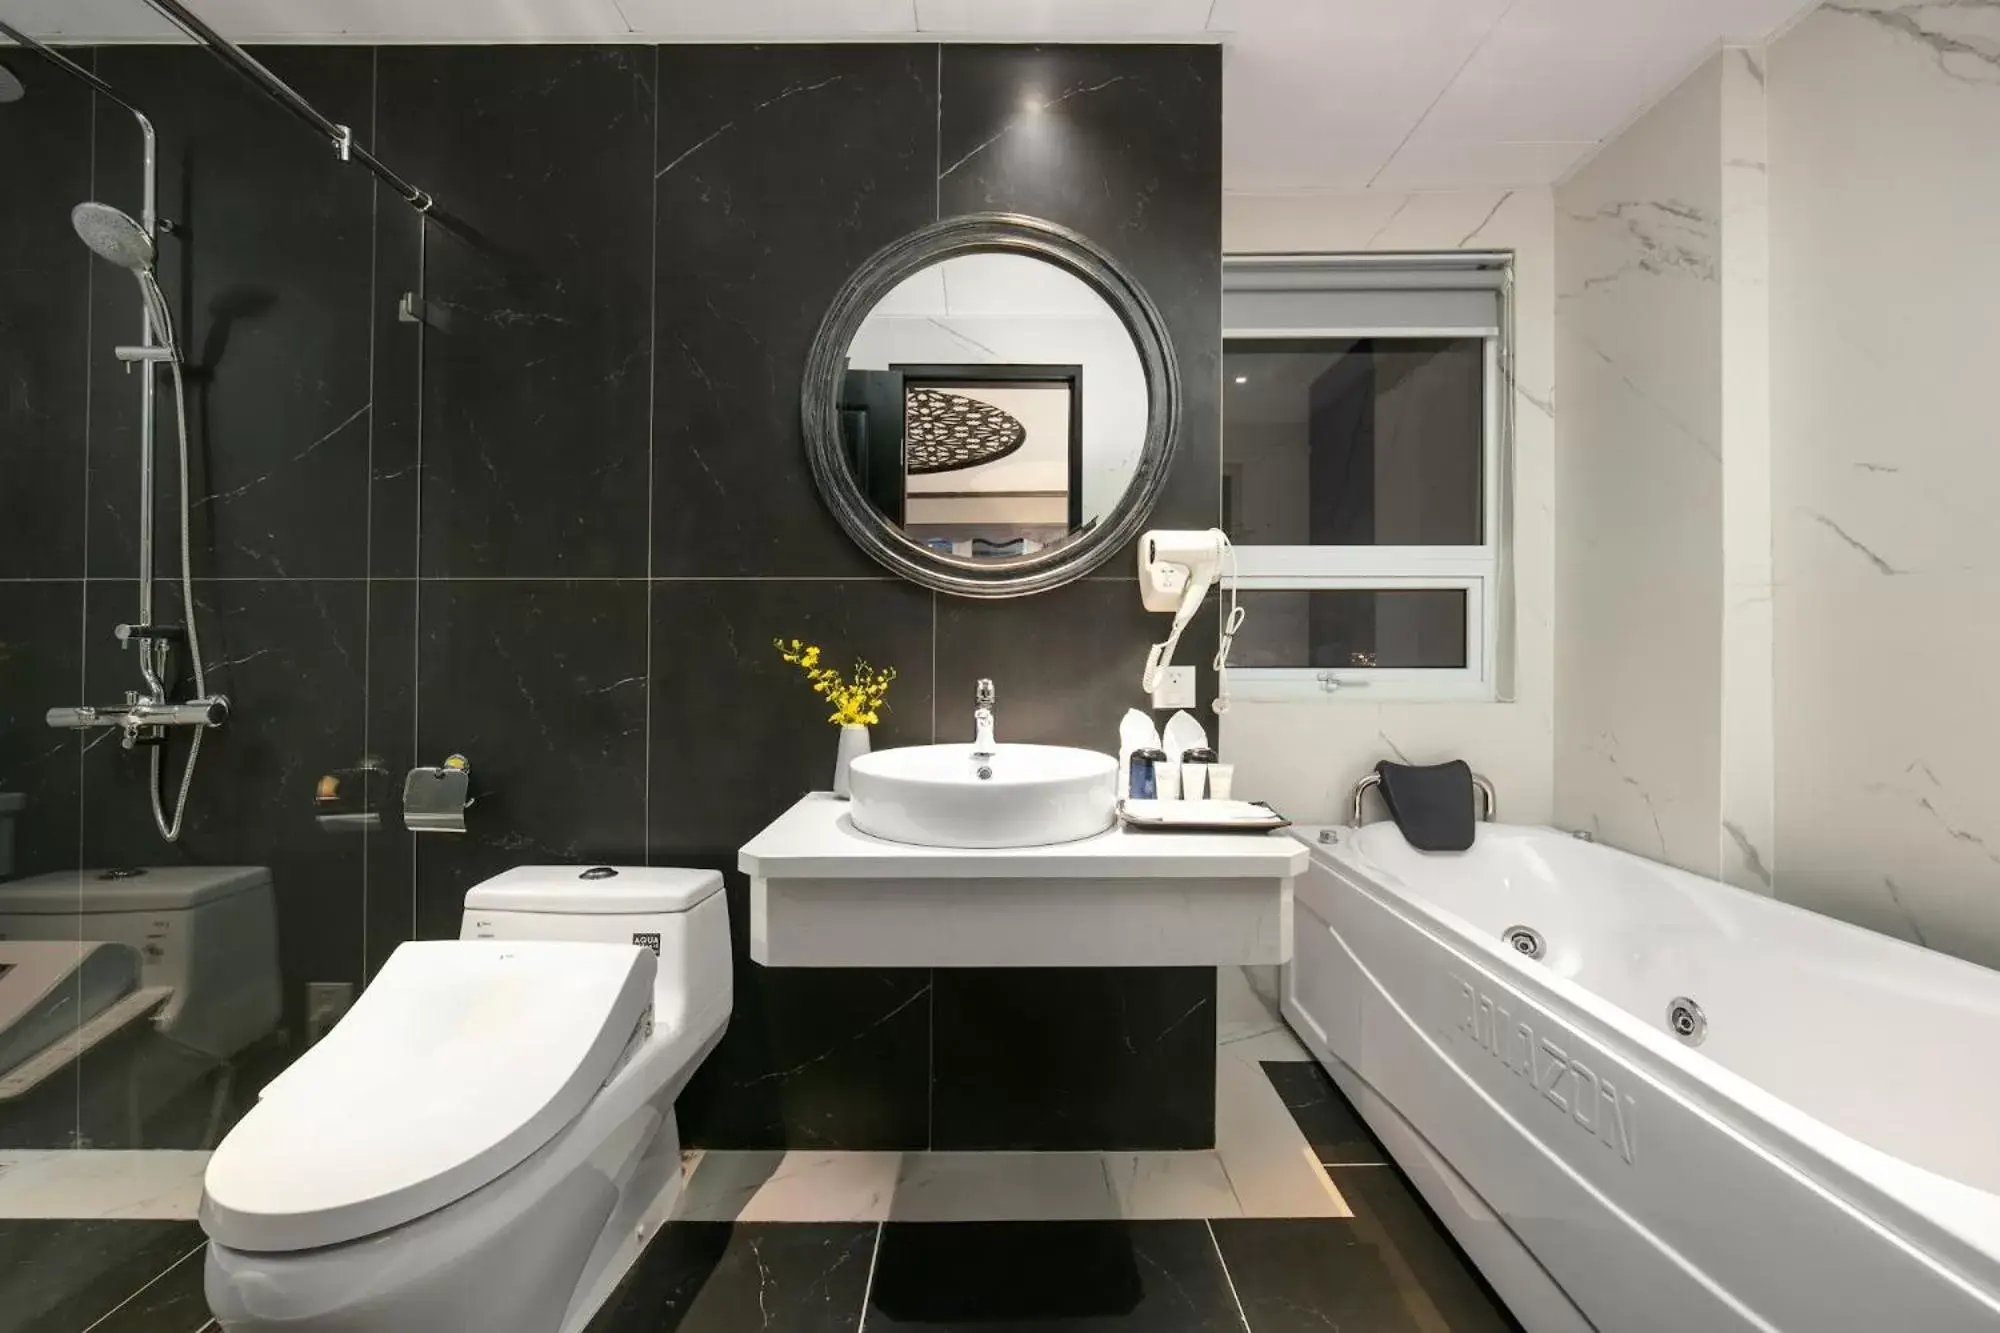 Hot Tub, Bathroom in Shining Central Hotel & Spa